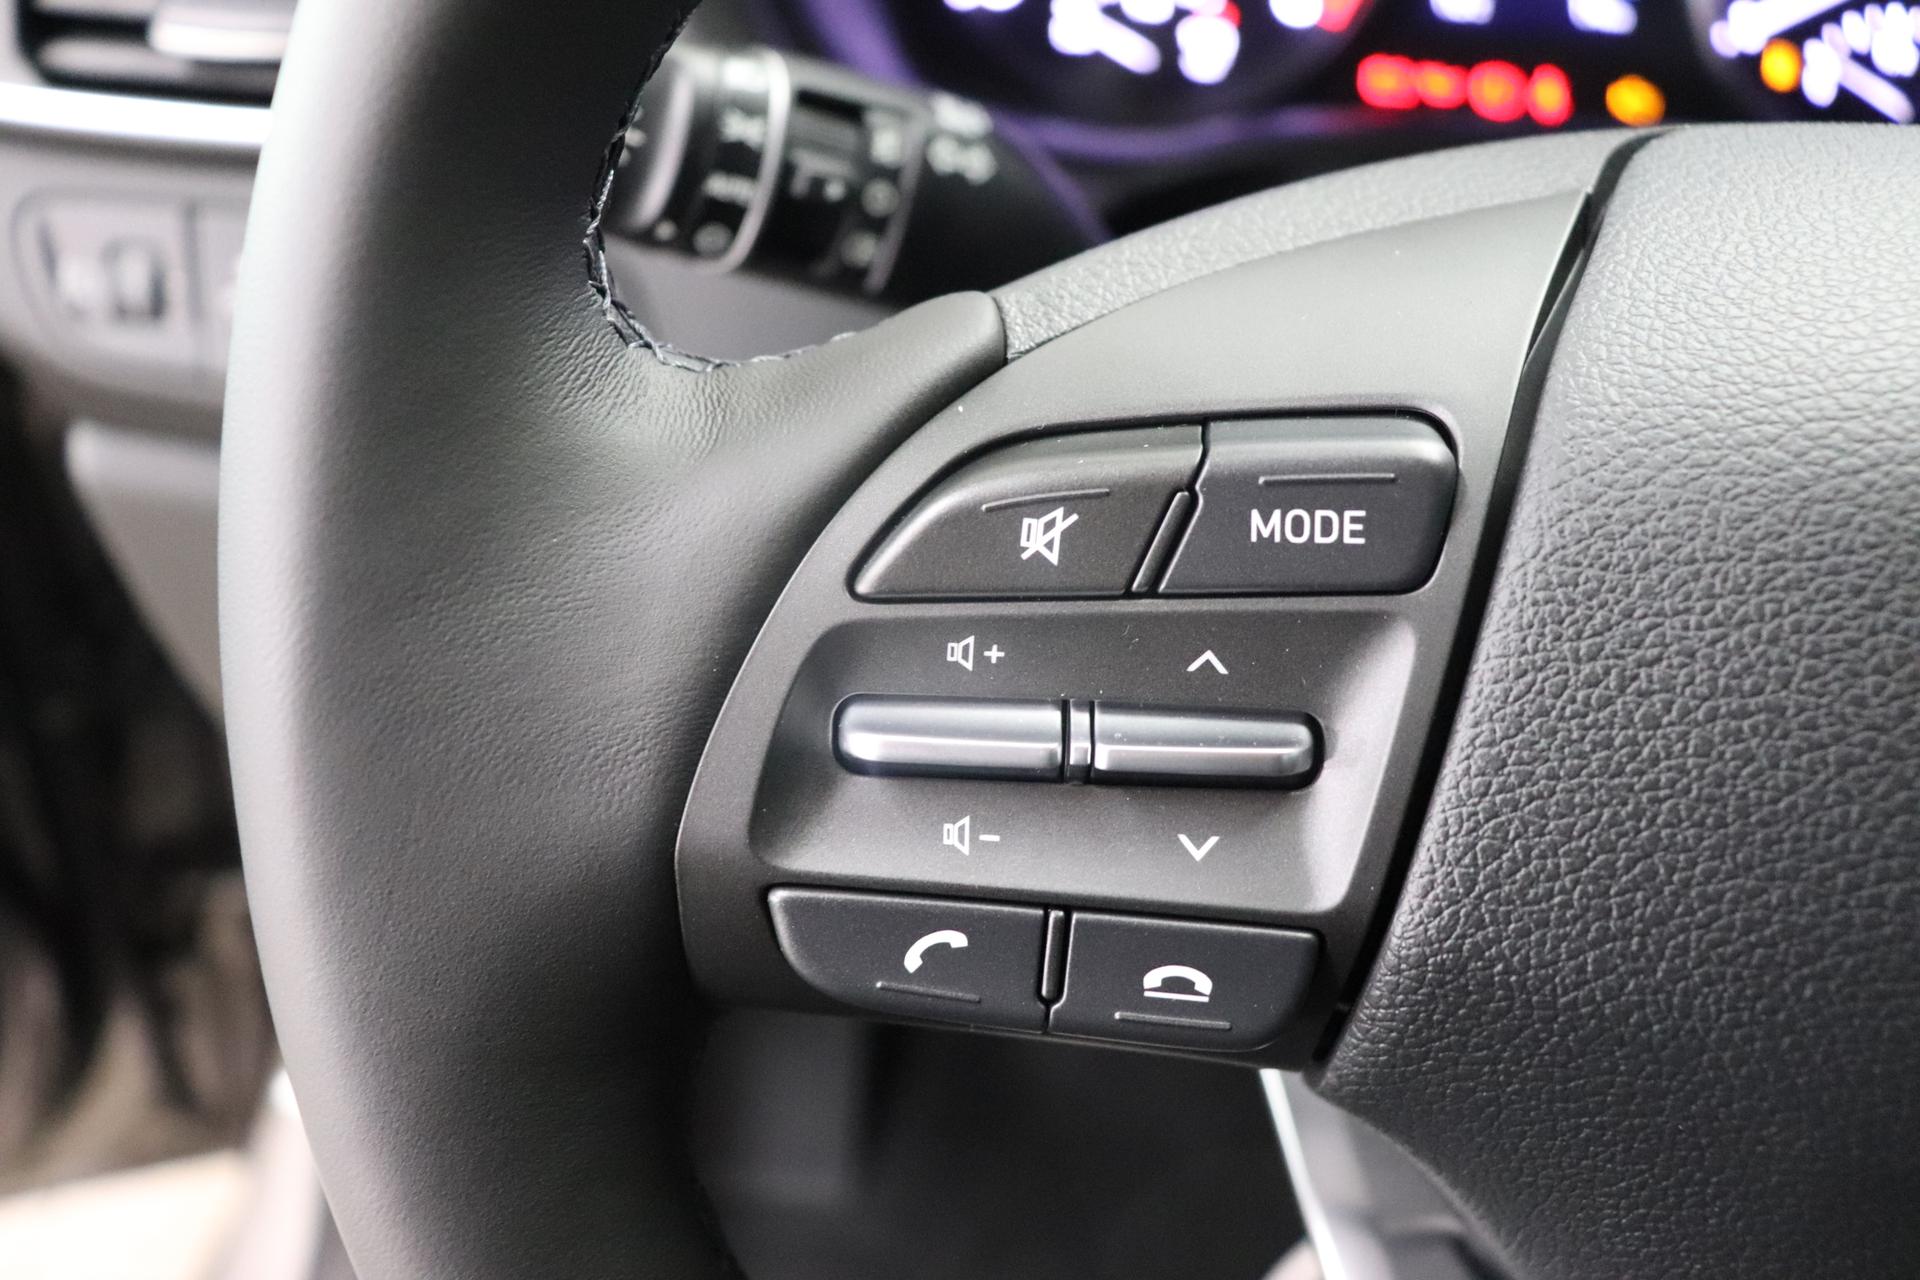 Hyundai i30 Comfort 1.0 T-GDi 7DCT FL, Klimaanlage, Sitzheizung,  Lederlenkrad, Radio DAB, Freisprecheinrichtung, Lichtsensor, Tempomat,  Einparkhilfe hinten, Nebelscheinwerfer, 16 Zoll Leichtmetallfelgen, uvm., EU-Neuwagen & Reimporte